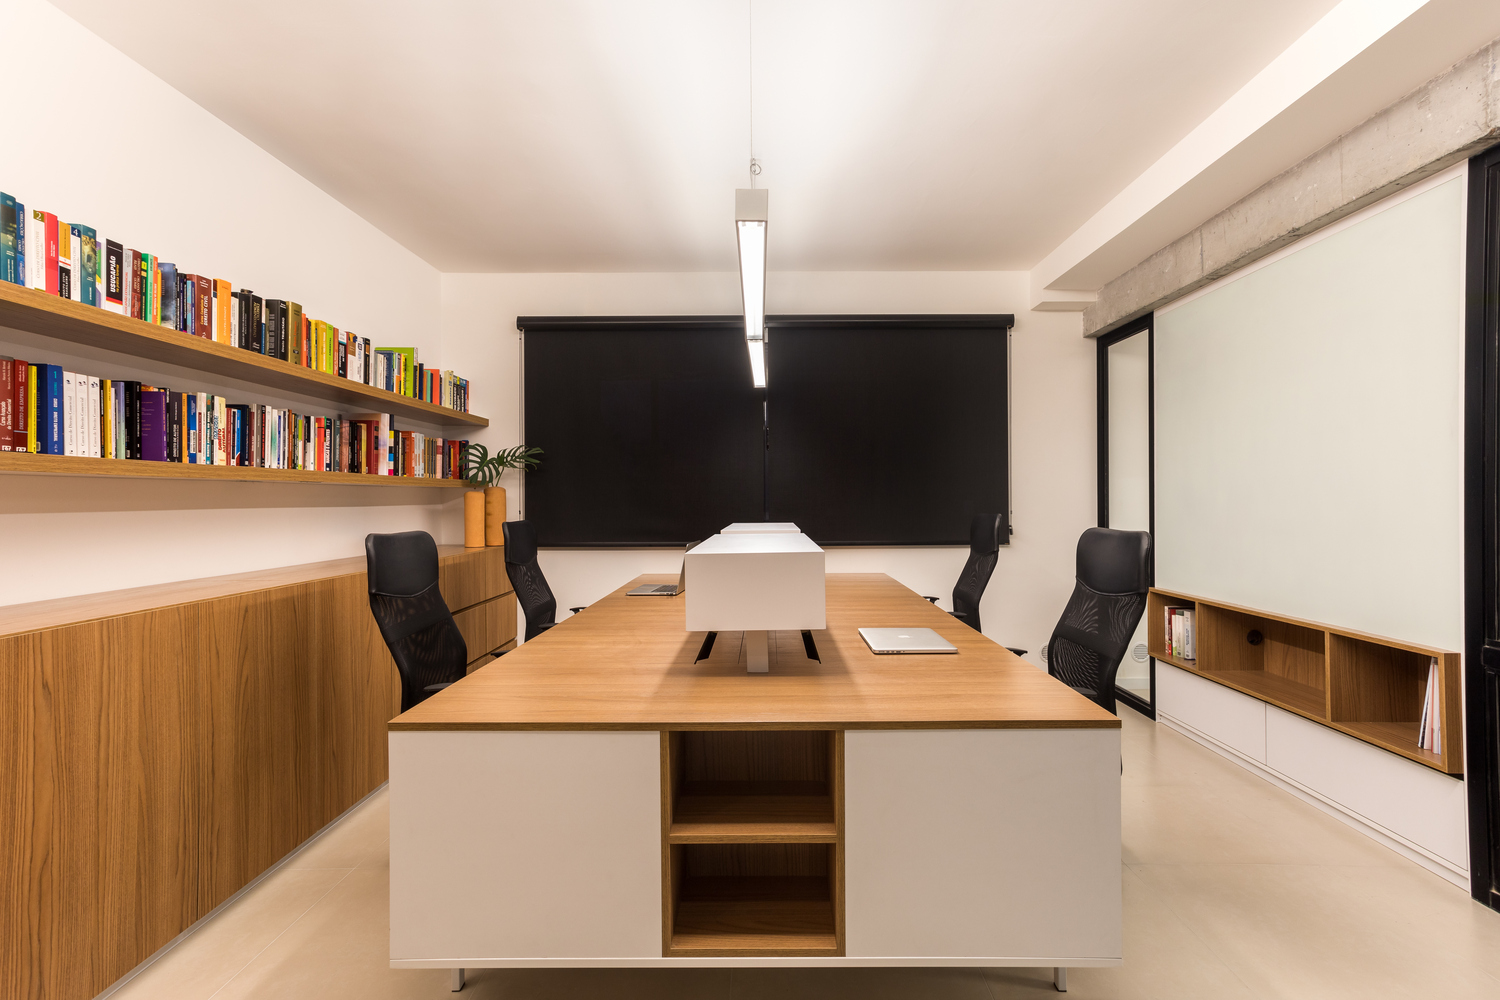 办公空间/小型办公室 完成时间:2019 项目面积:50平方米 设计公司